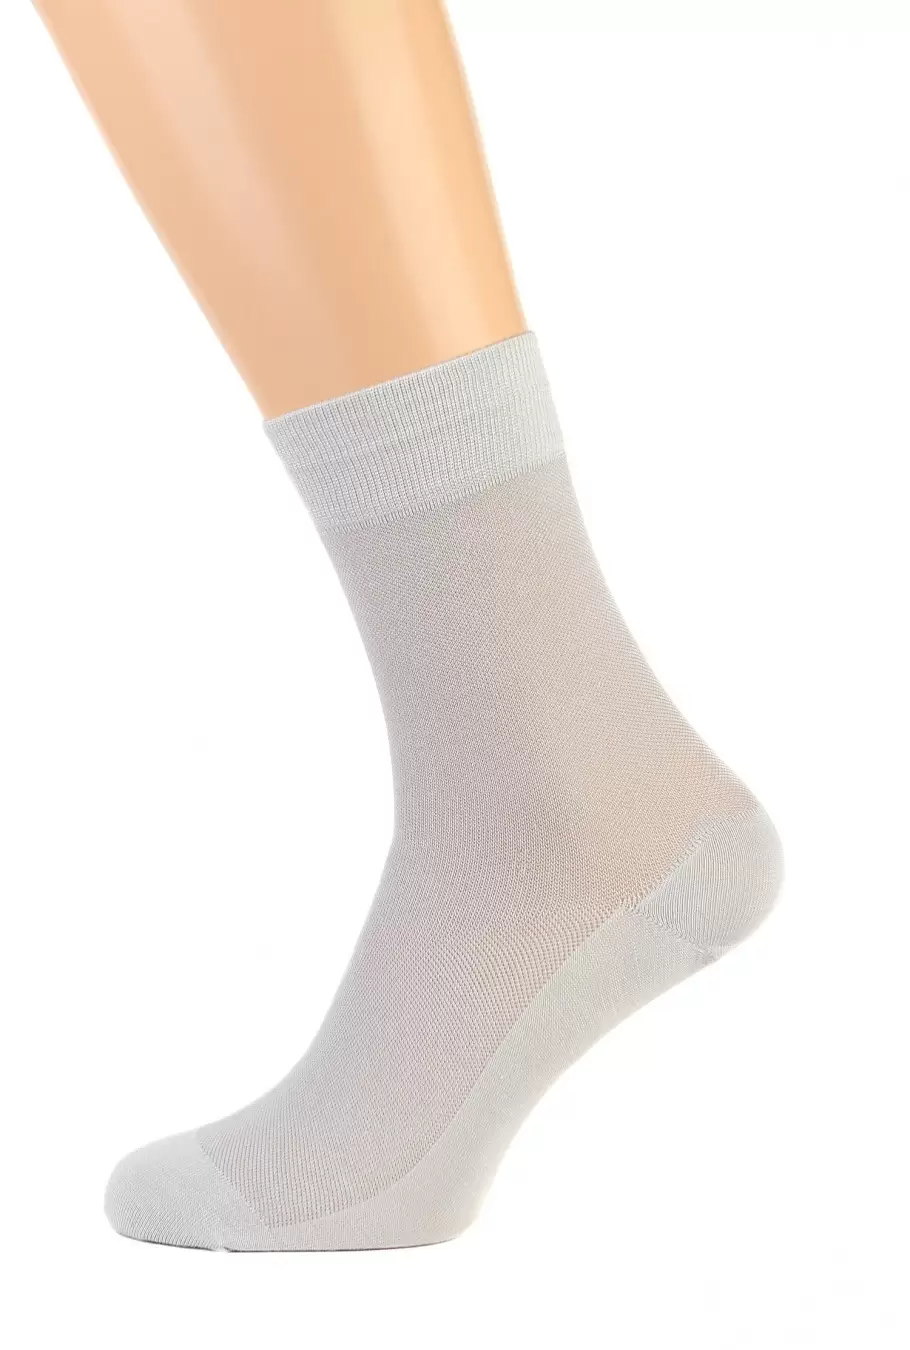 Pingons 10В9, мужские носки (изображение 1)